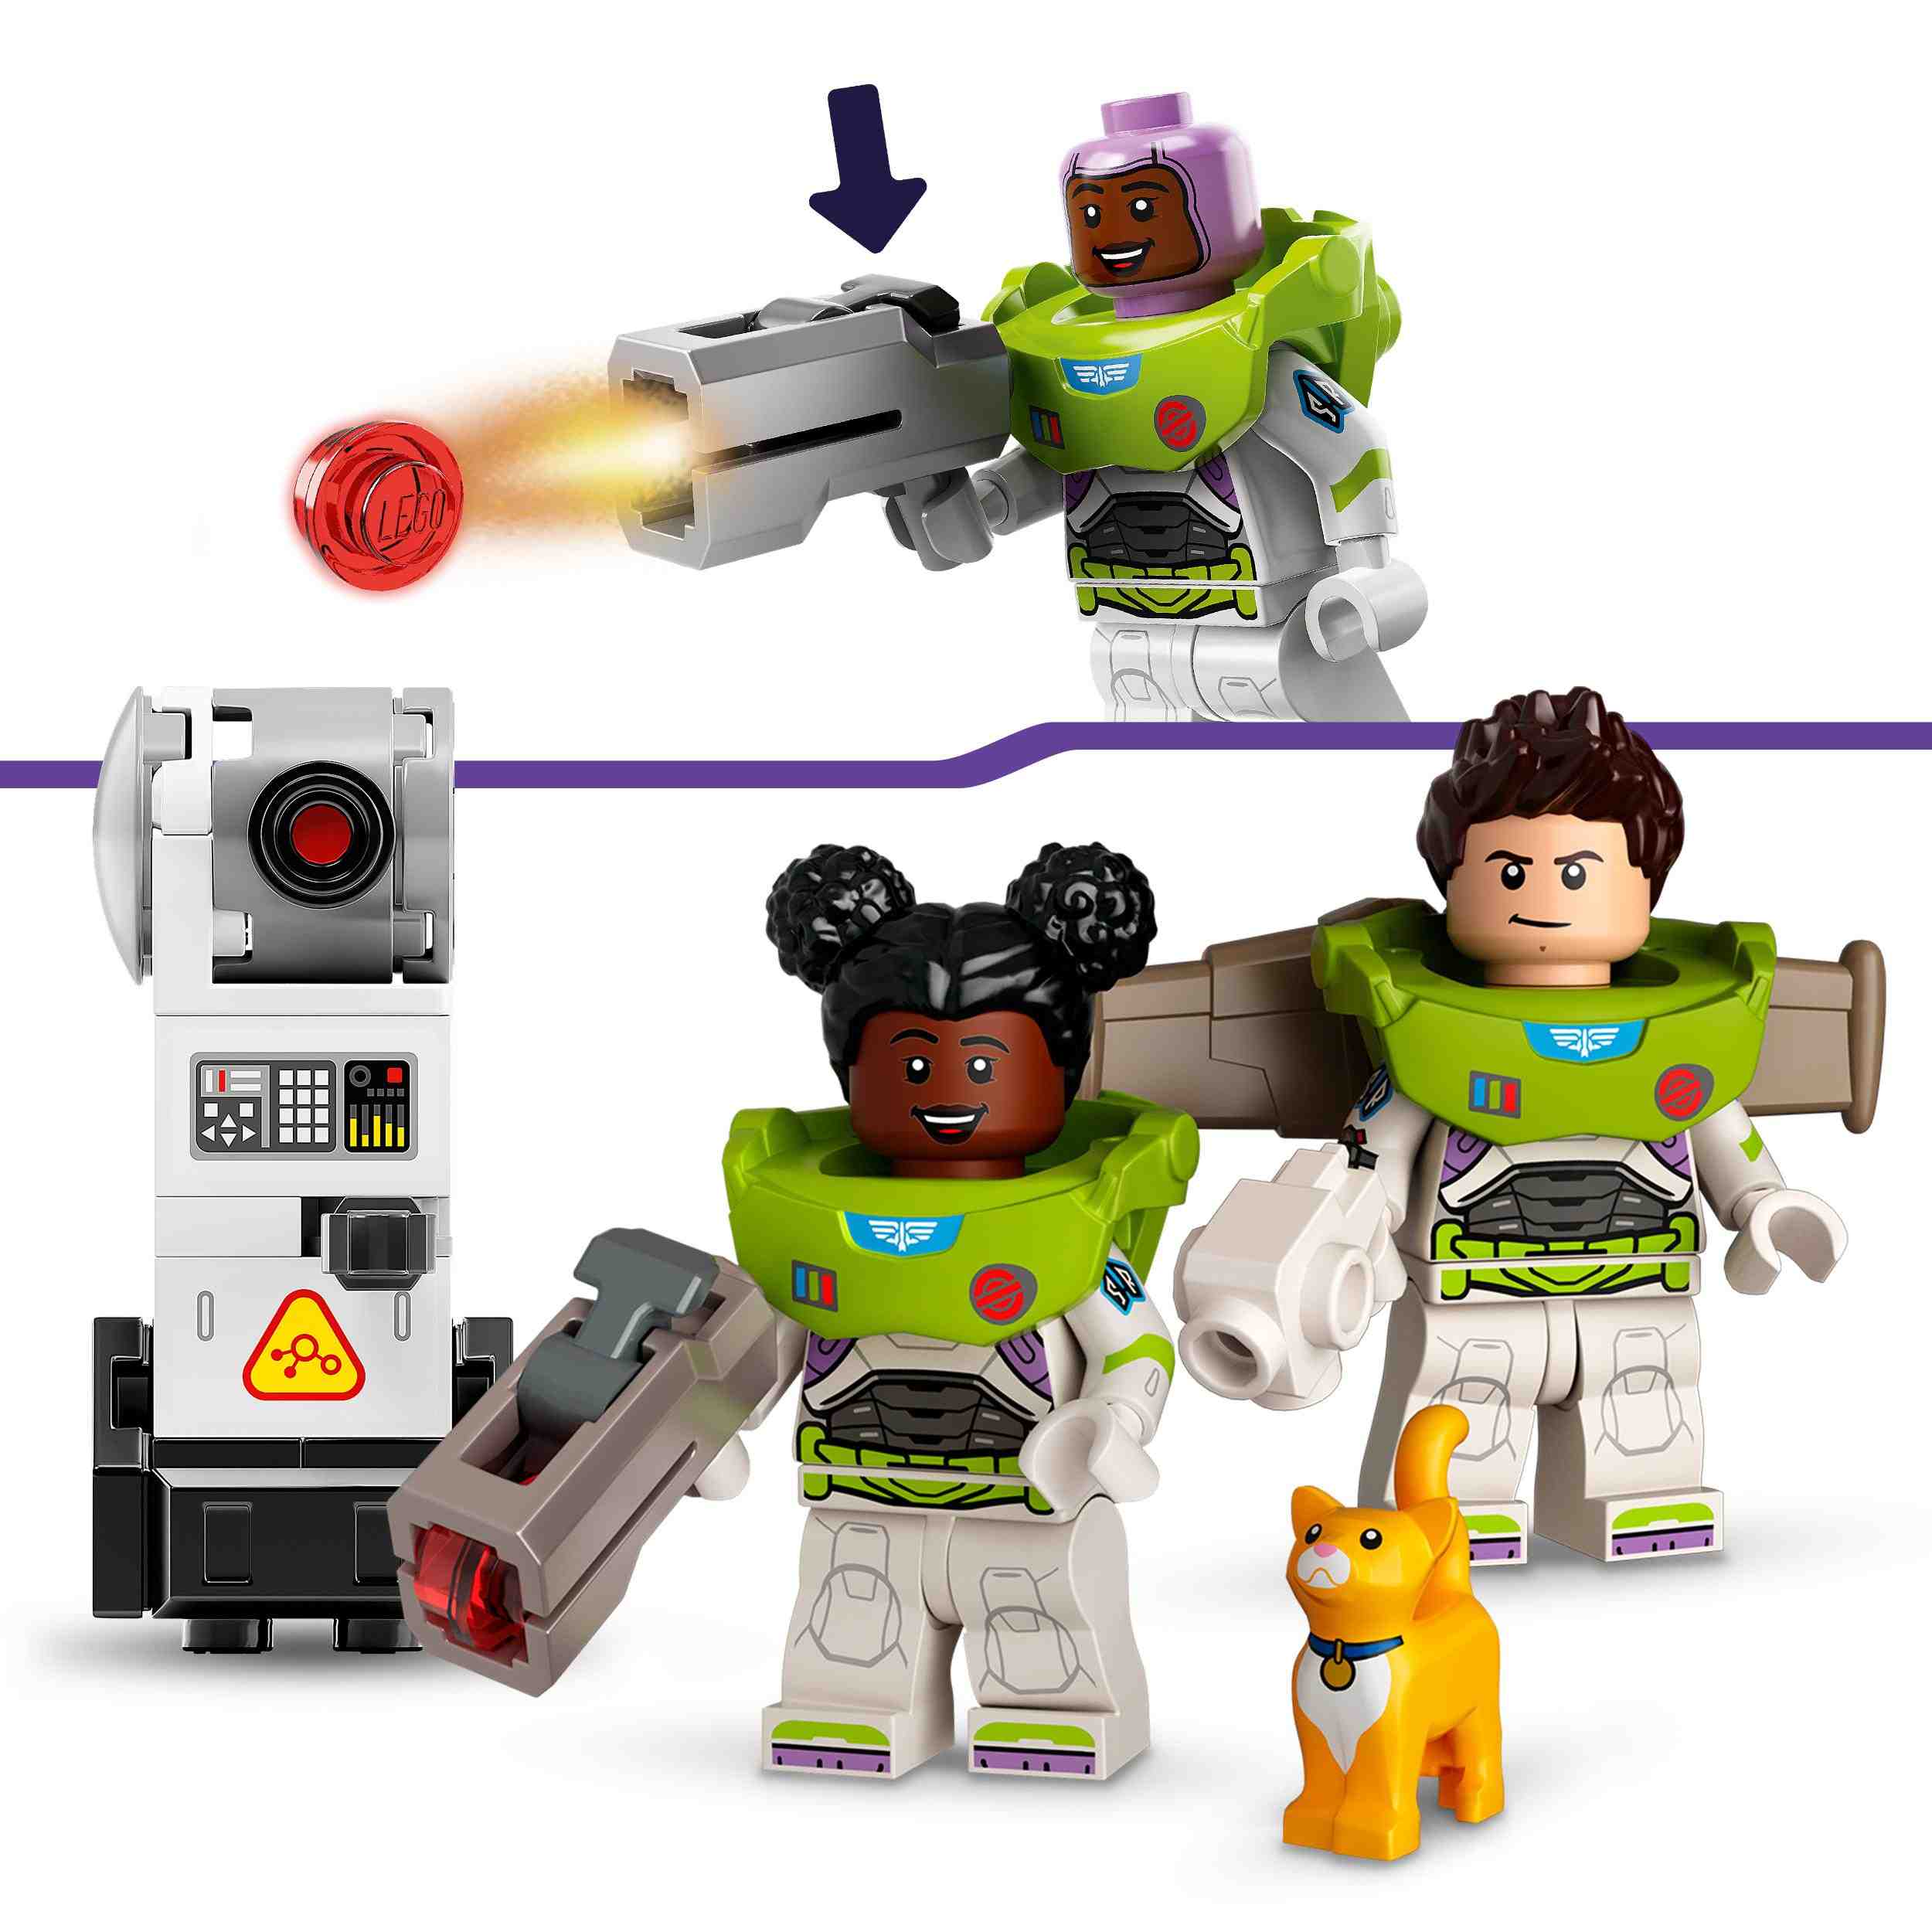 Lego lightyear disney e pixar 76831 battaglia di zurg, giochi per bambini dai 7 anni, minifigure di buzz e un action figure mech - Lightyear, Lego